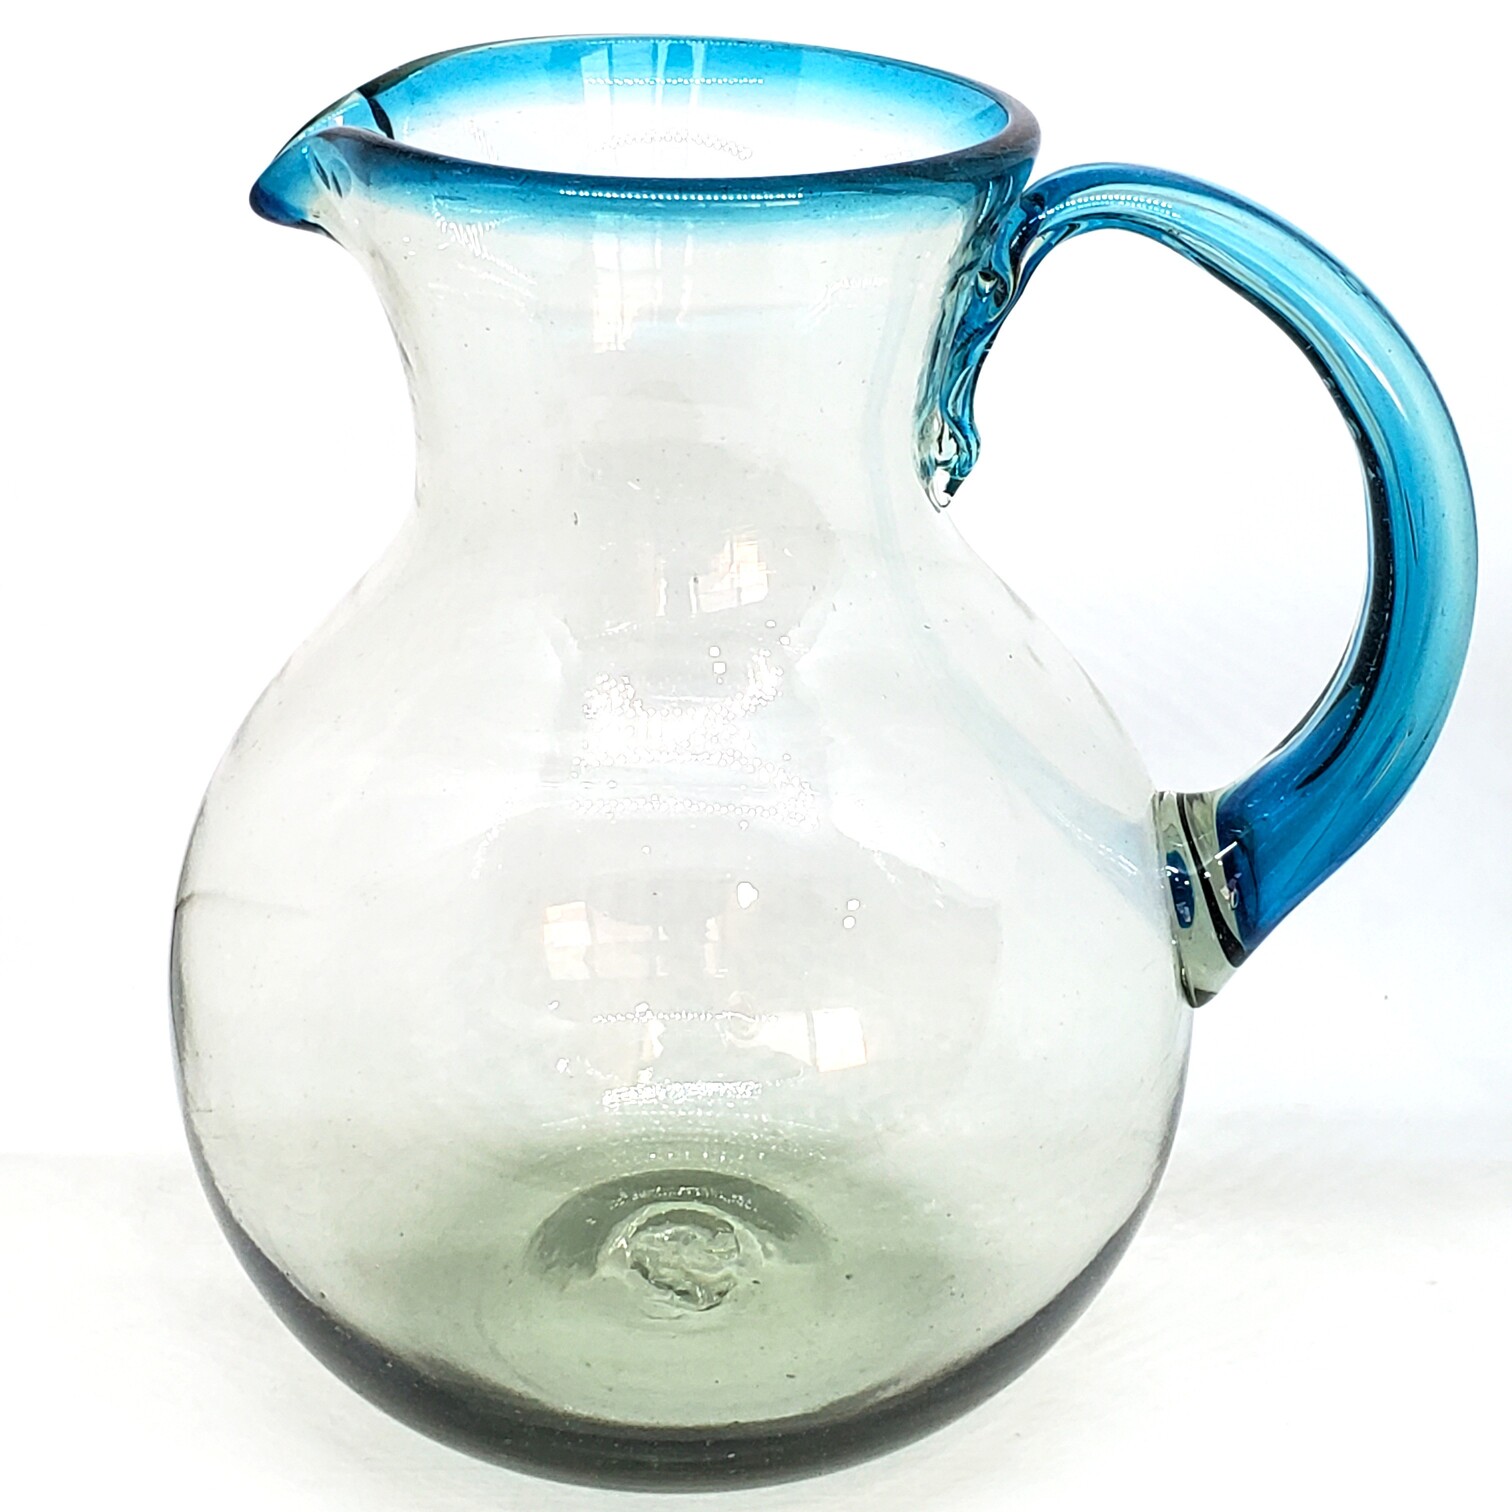 VIDRIO SOPLADO / Jarra de vidrio soplado con borde azul aqua, 120 oz, Vidrio Reciclado, Libre de Plomo y Toxinas